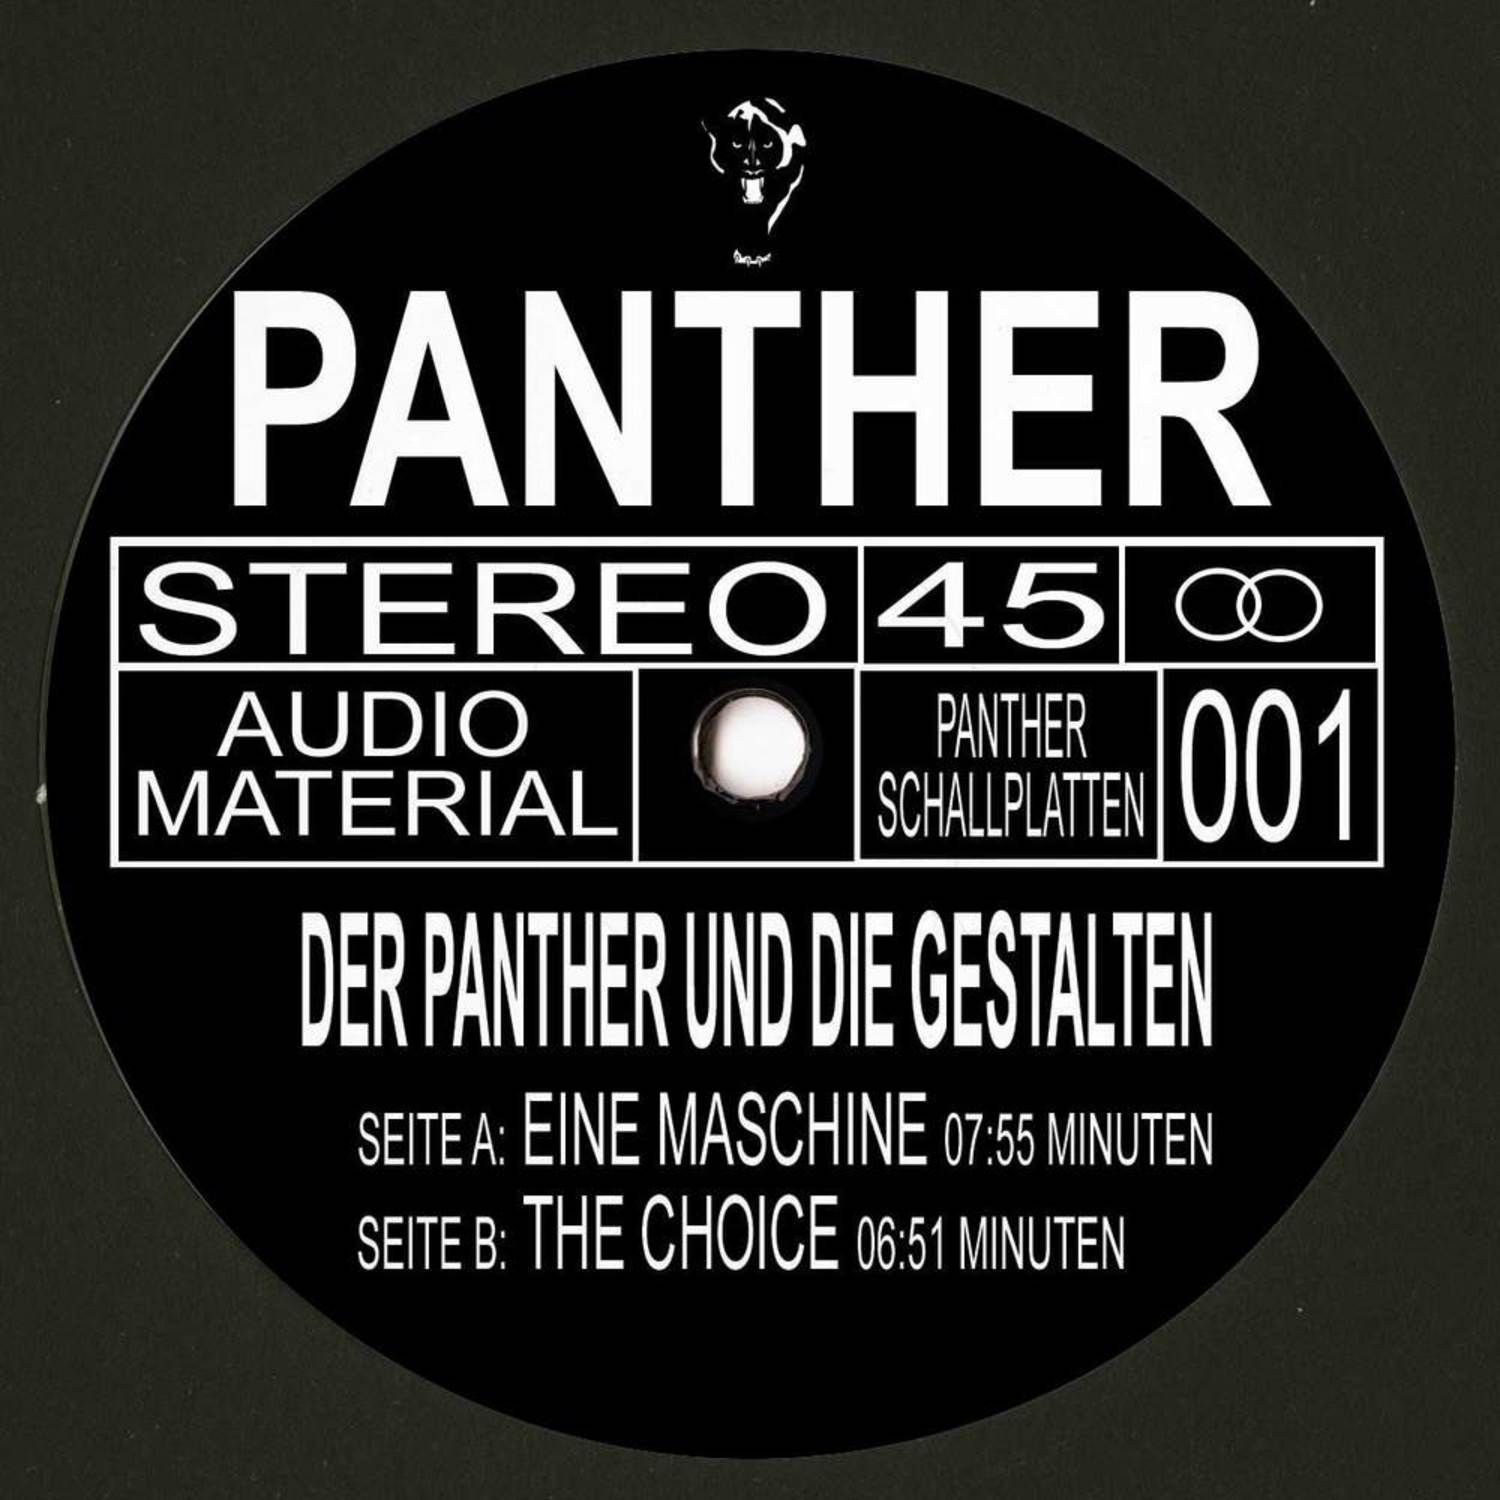 Der Panther und die Gestalten - EINE MASCHINE